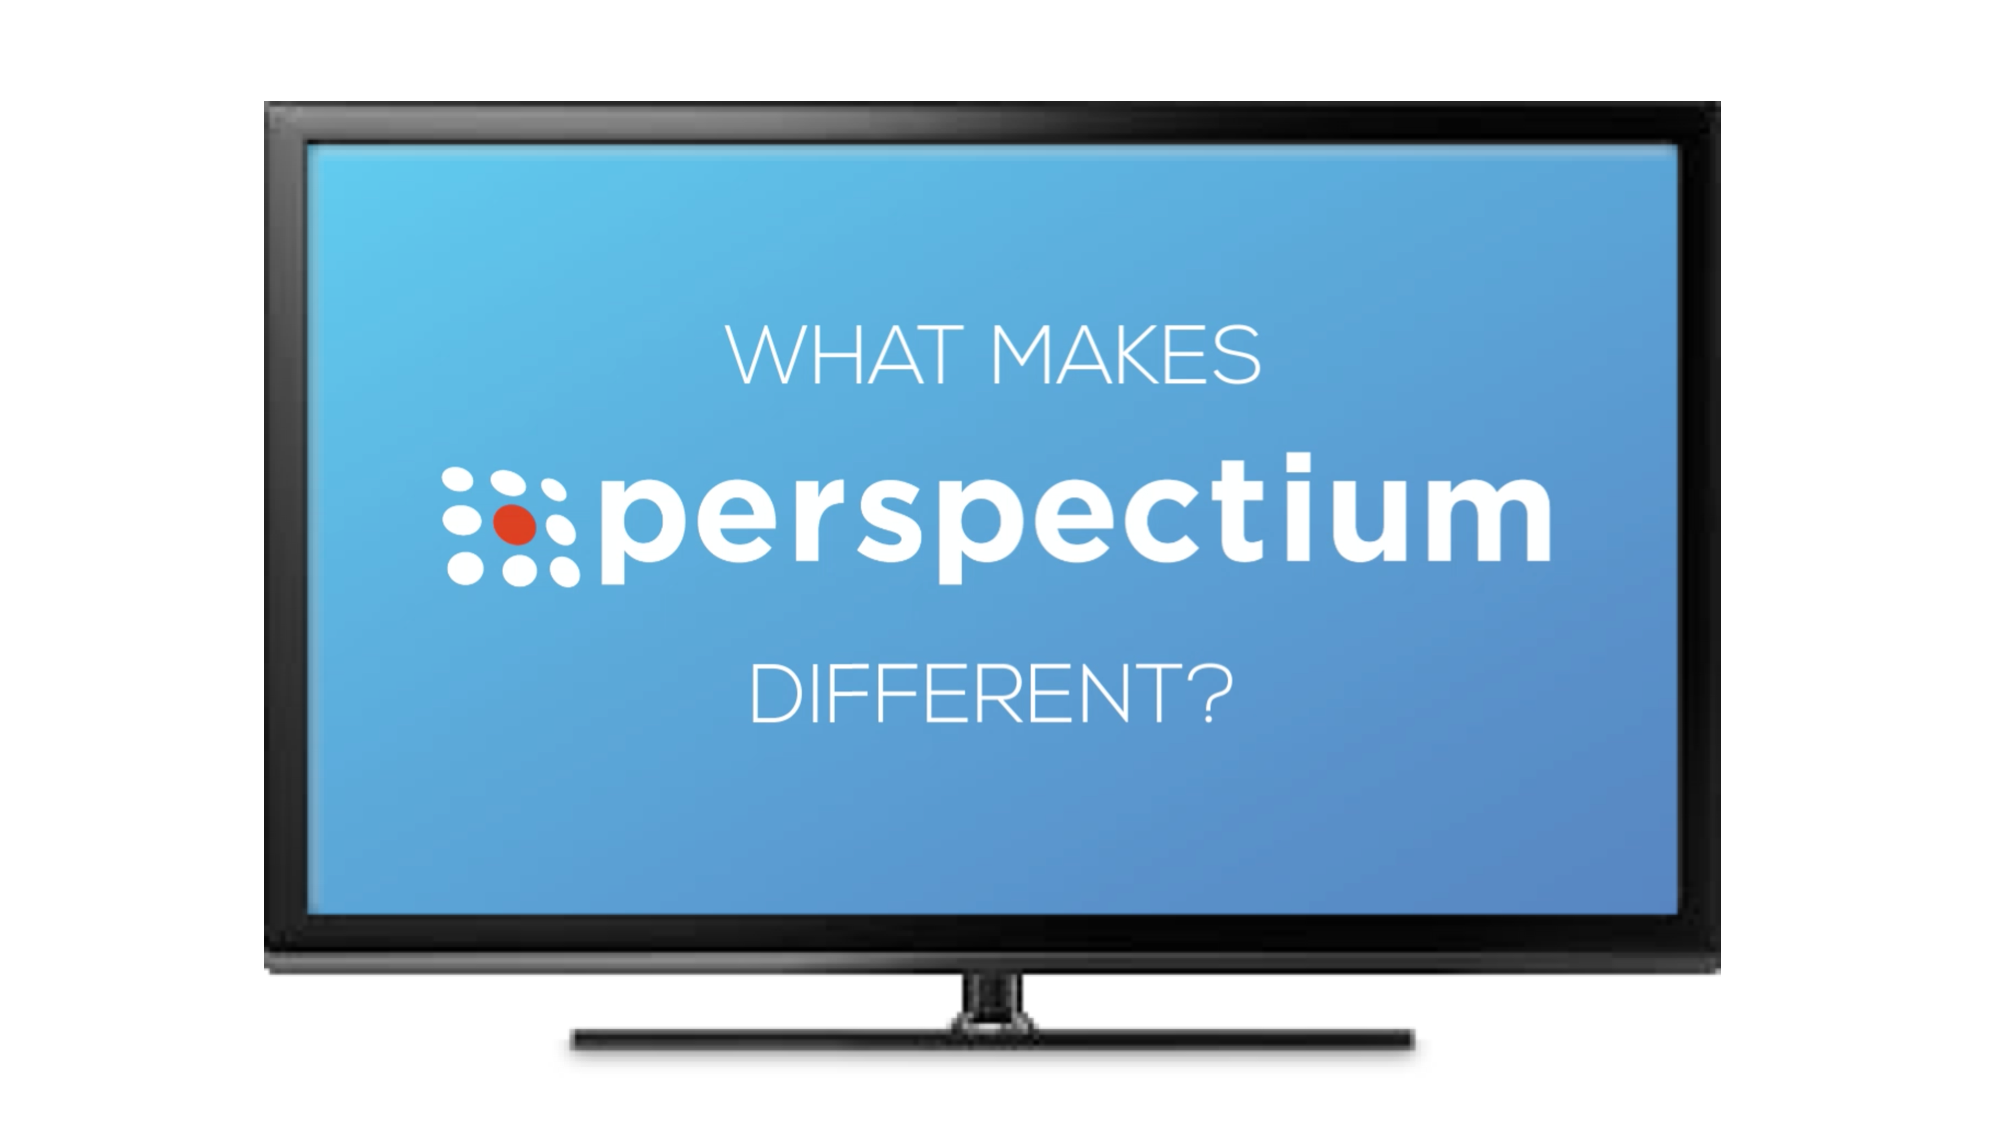 perspectium_different